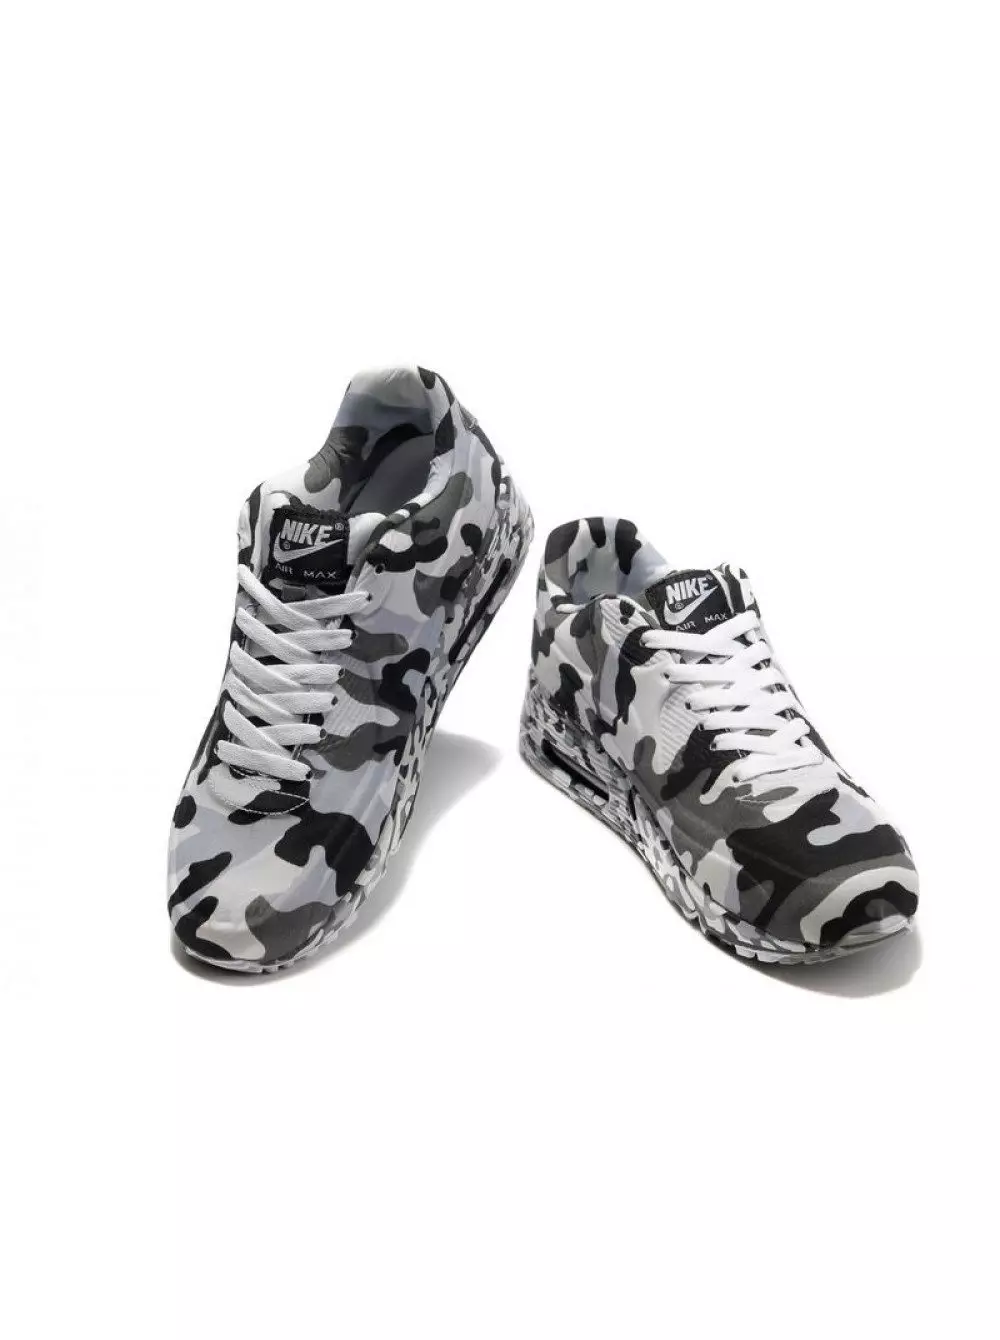 Kamaka sneaker (49 hotuna): Models a cikin surarar sojan soja tare da buga camouflage, Khaki, kame 2031_32